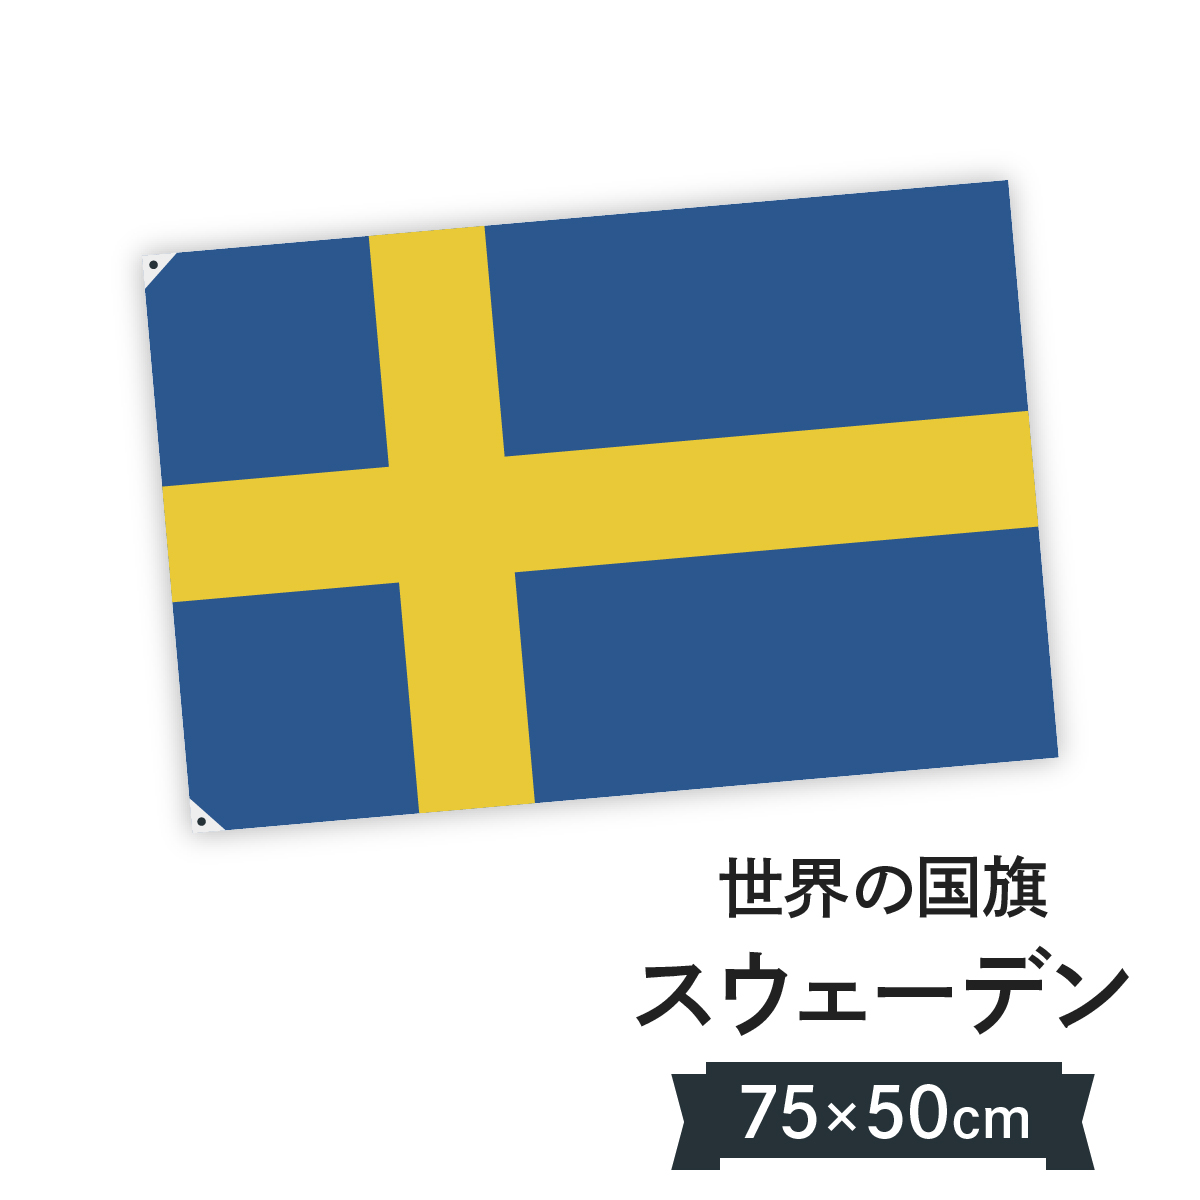 お店に飾ればお手軽異国風演出！ スウェーデン王国 国旗 W75cm H50cm